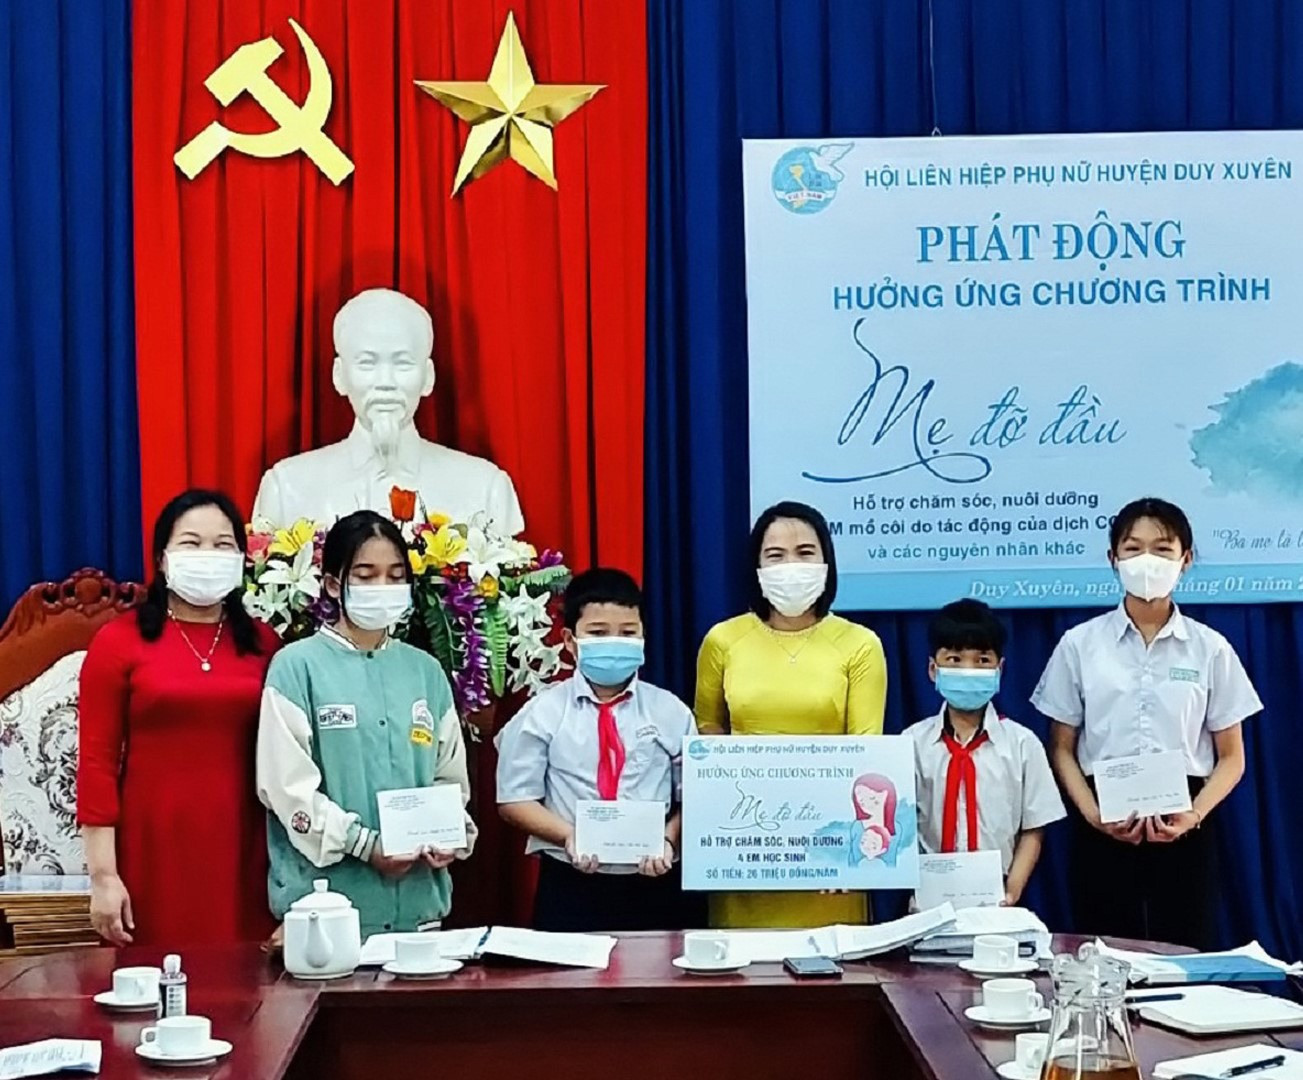 Hội LHPN huyện Duy Xuyên hiện đang nhận chăm sóc, nuôi dưỡng 30 trẻ em mồ côi, khó khăn. Ảnh: T.N